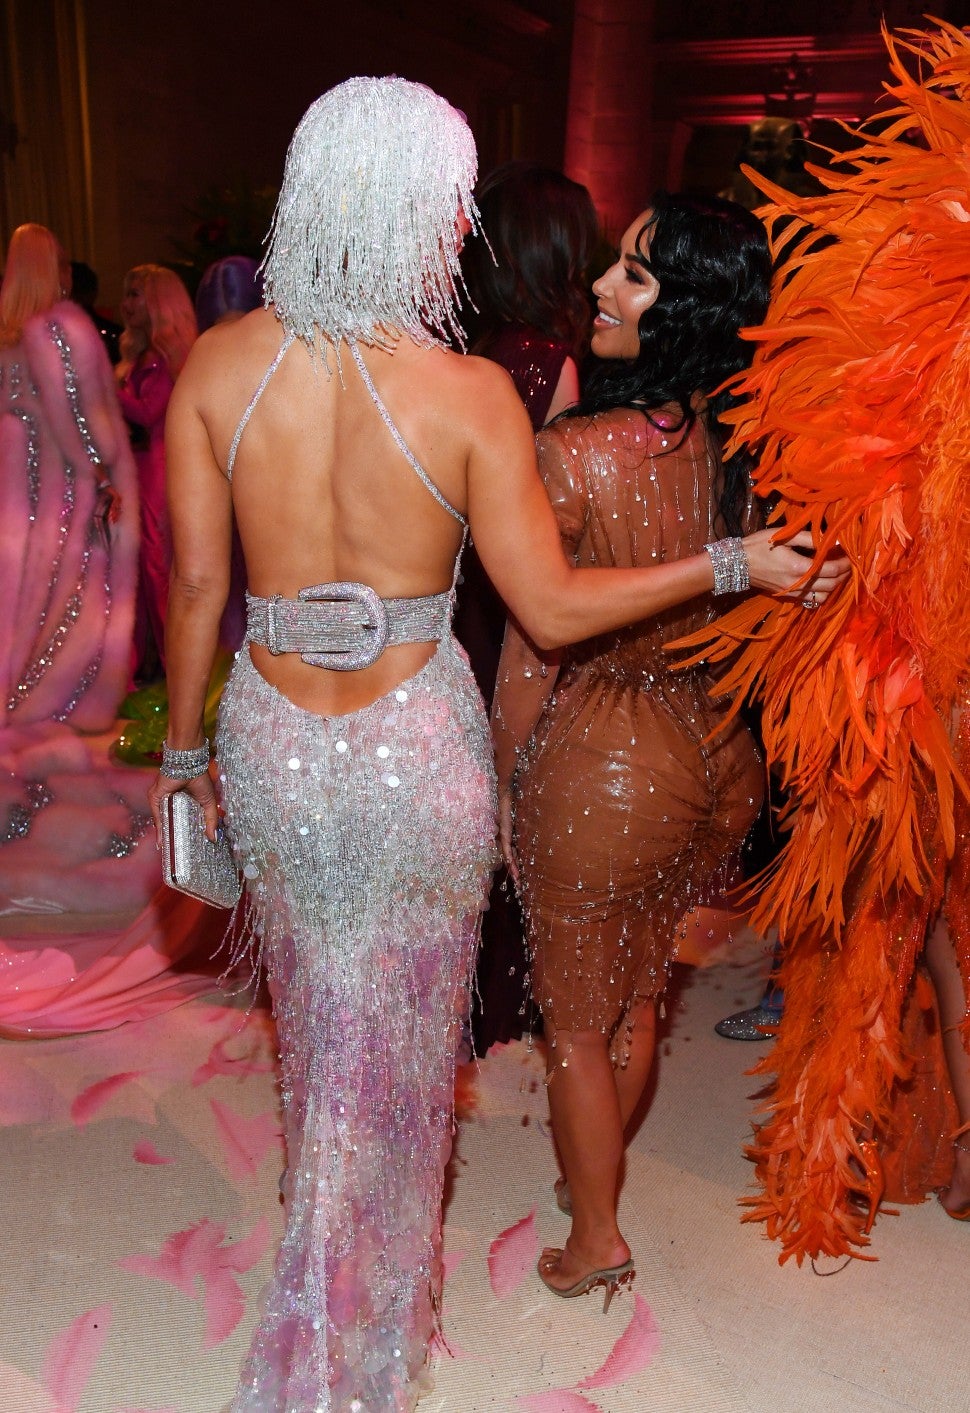 Jennifer Lopez and Kim Kardashian